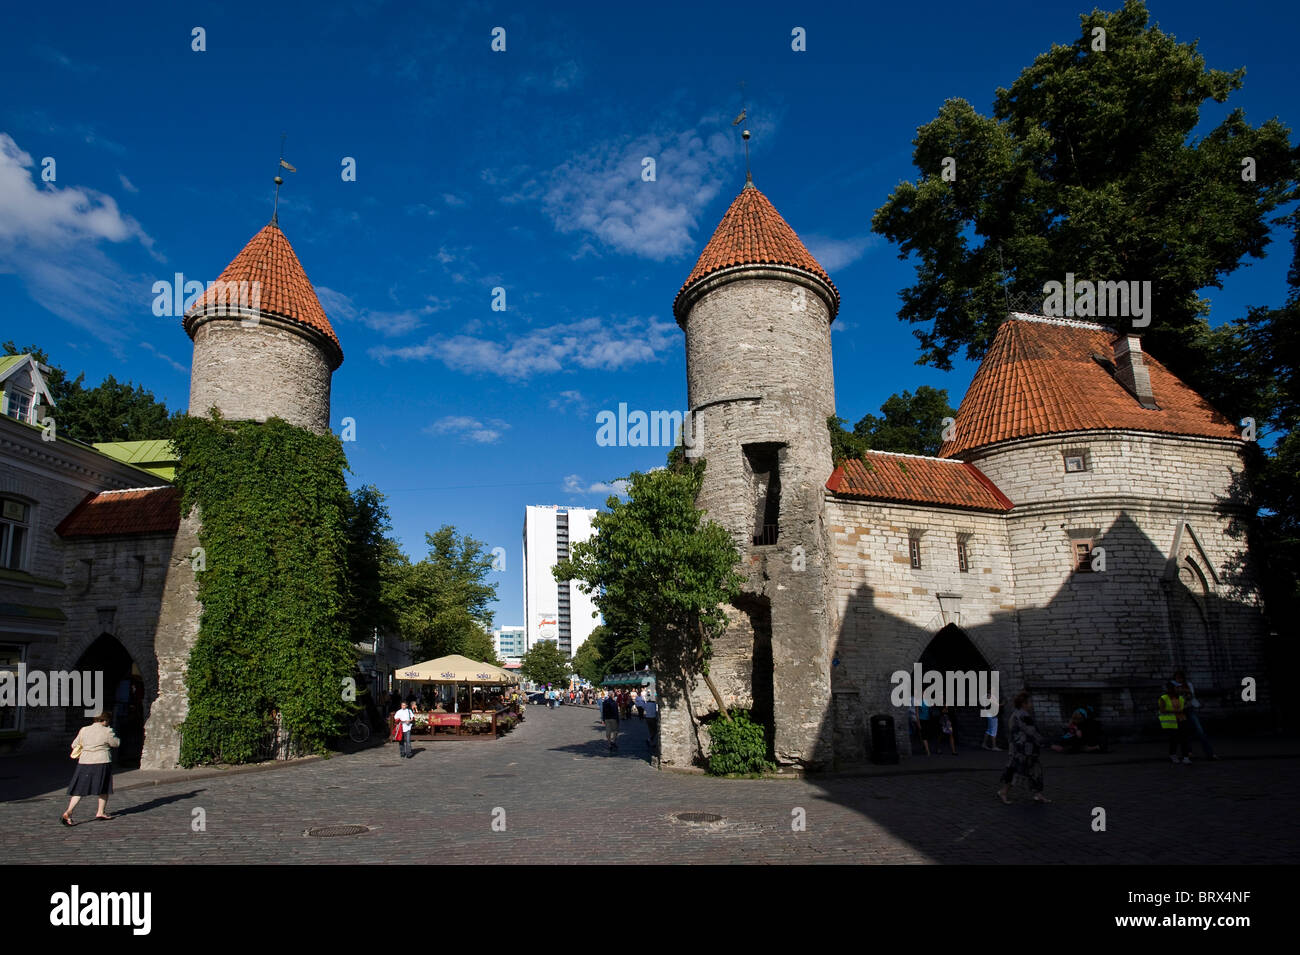 Town gate, Tallinn, Estonia, Baltic States Stock Photo